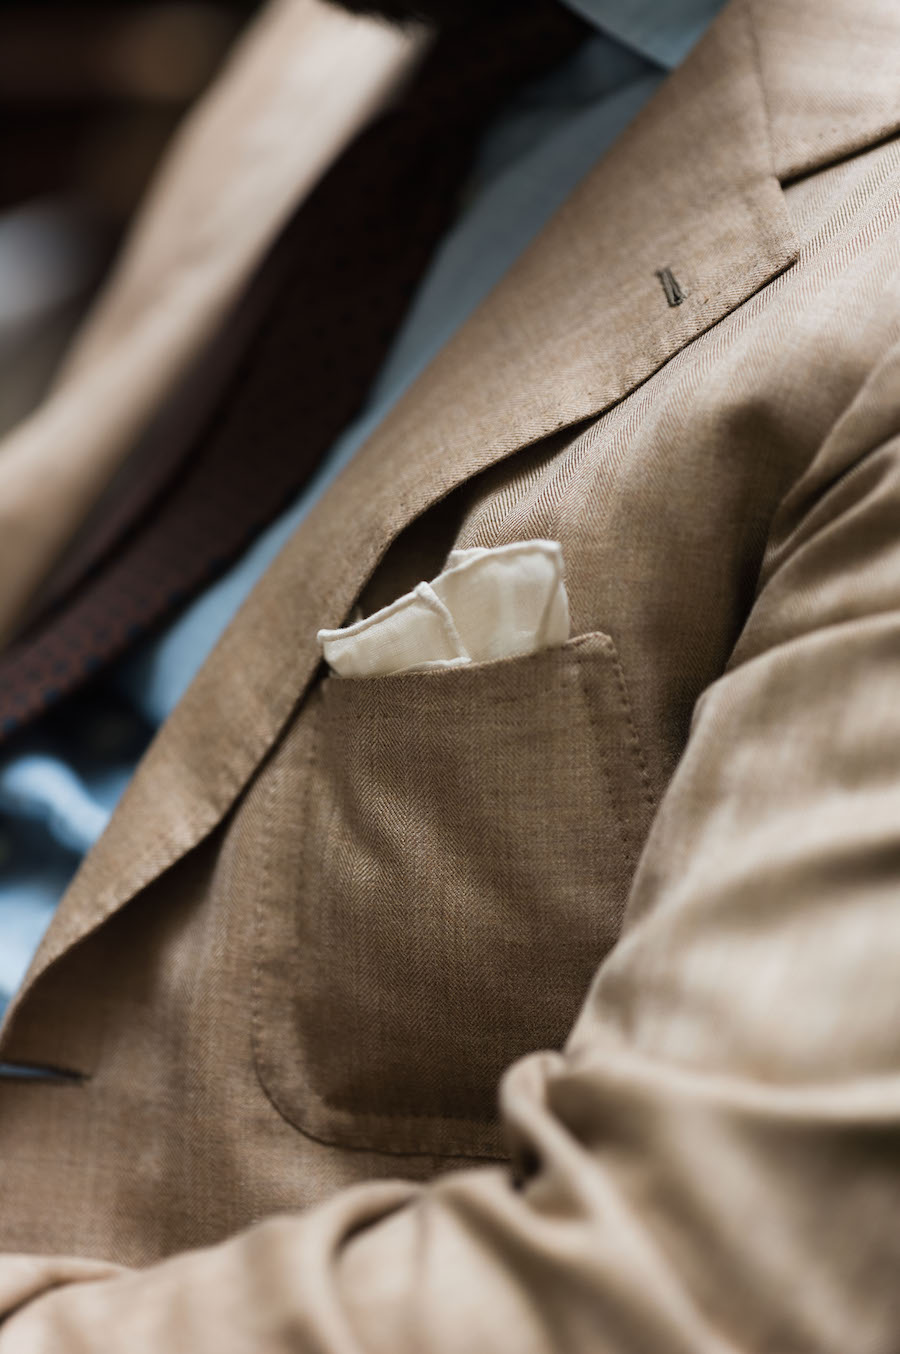 Suit Jacket Men , Breathable Stylish Lightweight Mens Suit Coats